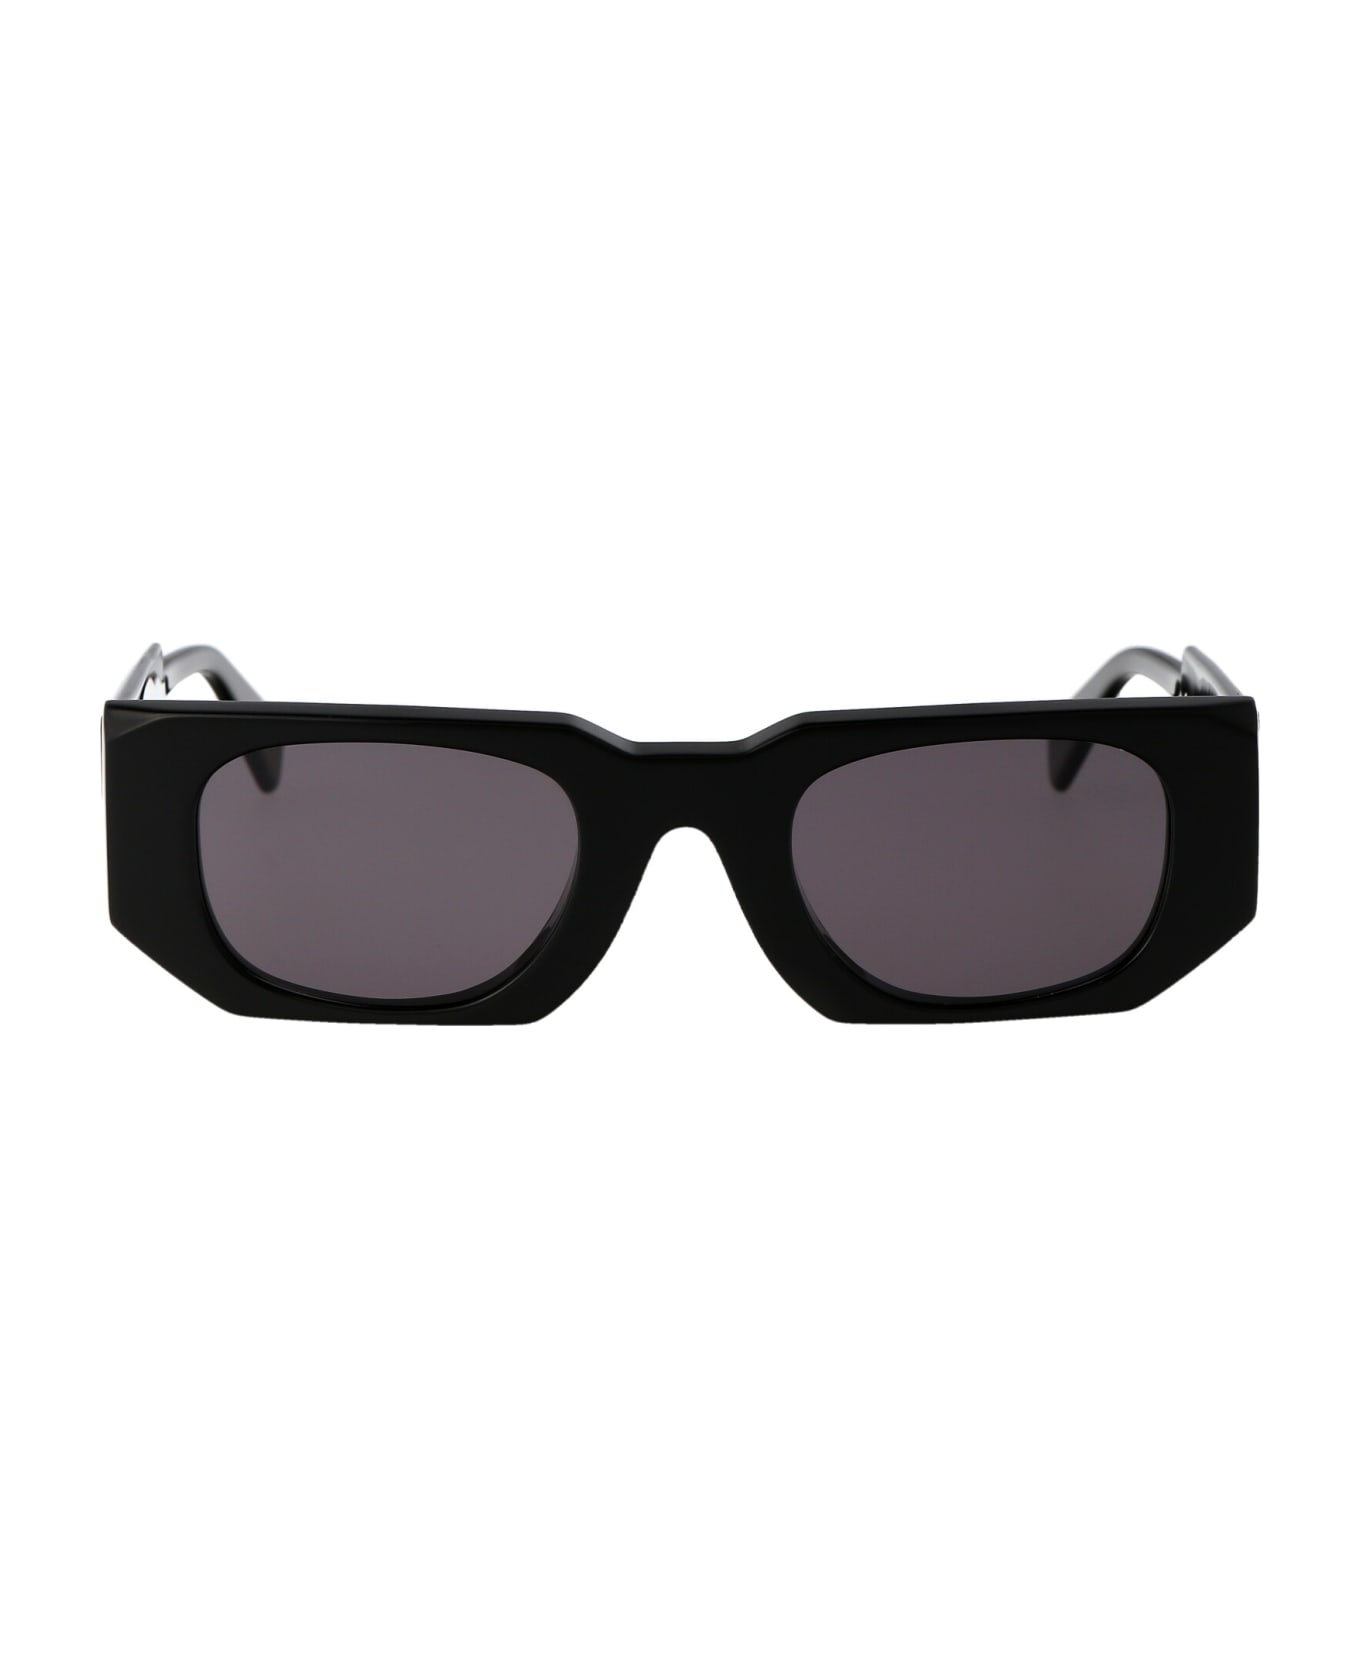 Kuboraum Maske U8 Sunglasses - BS 2grey